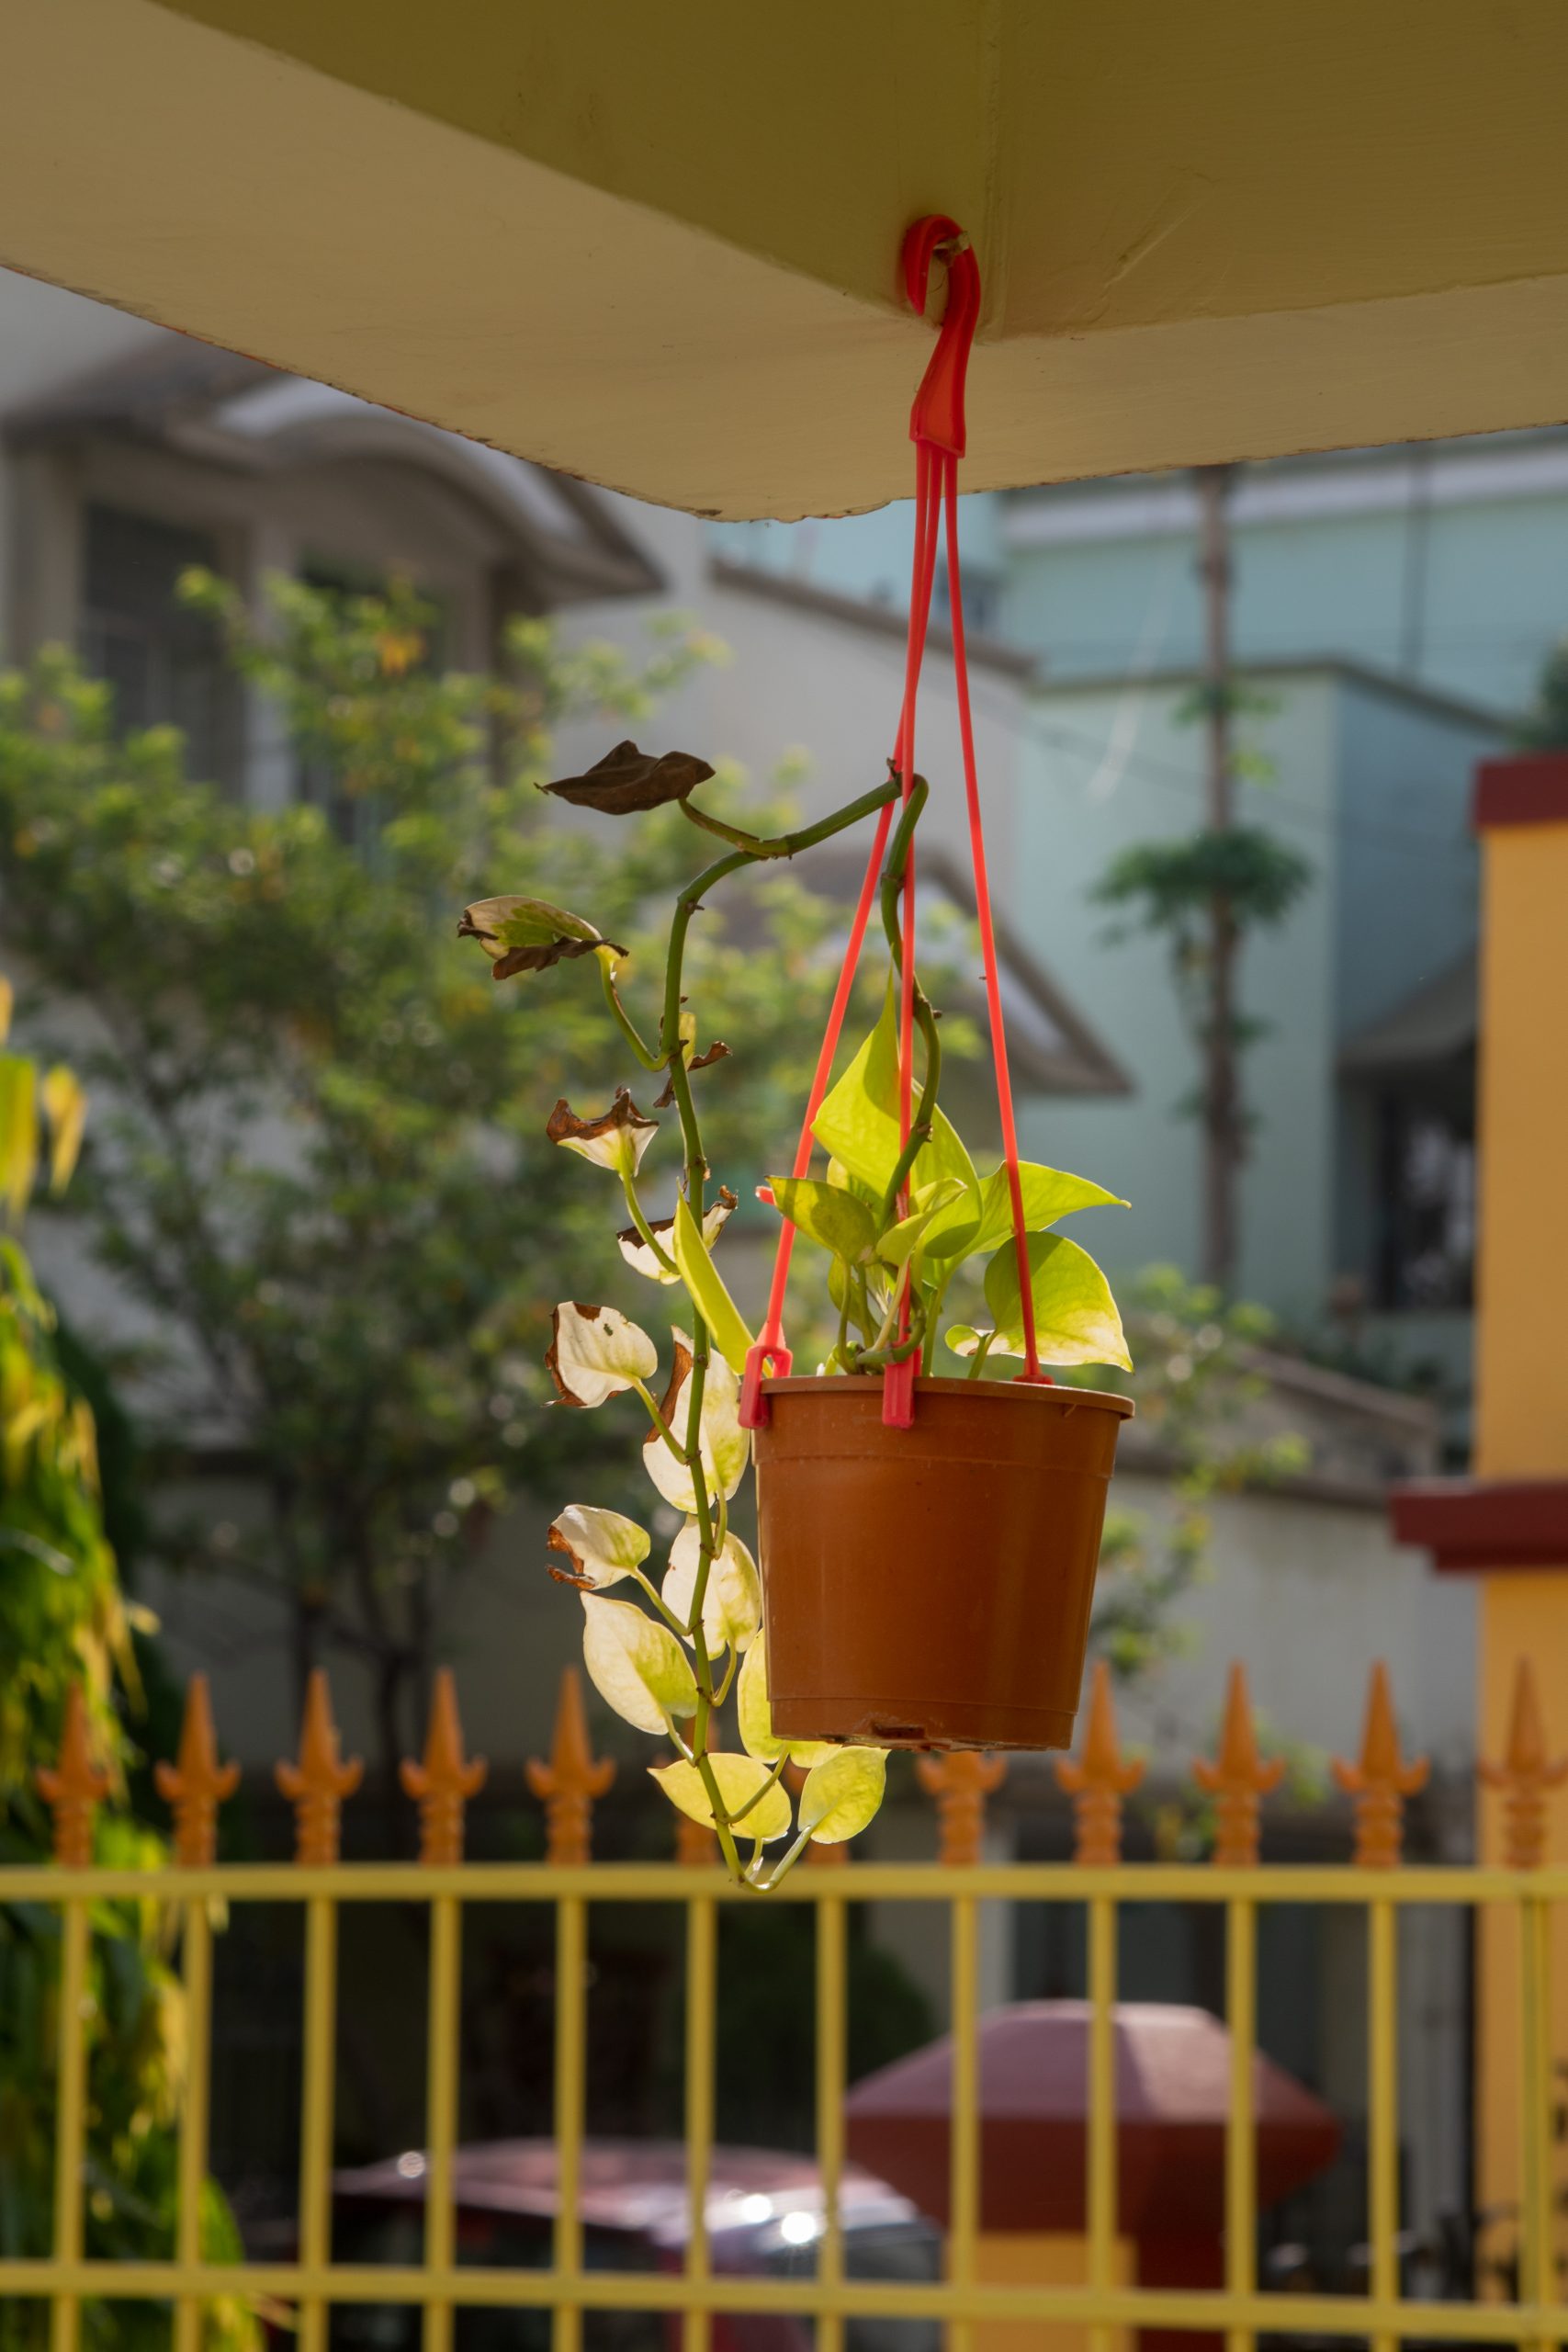 A hanging flower pot